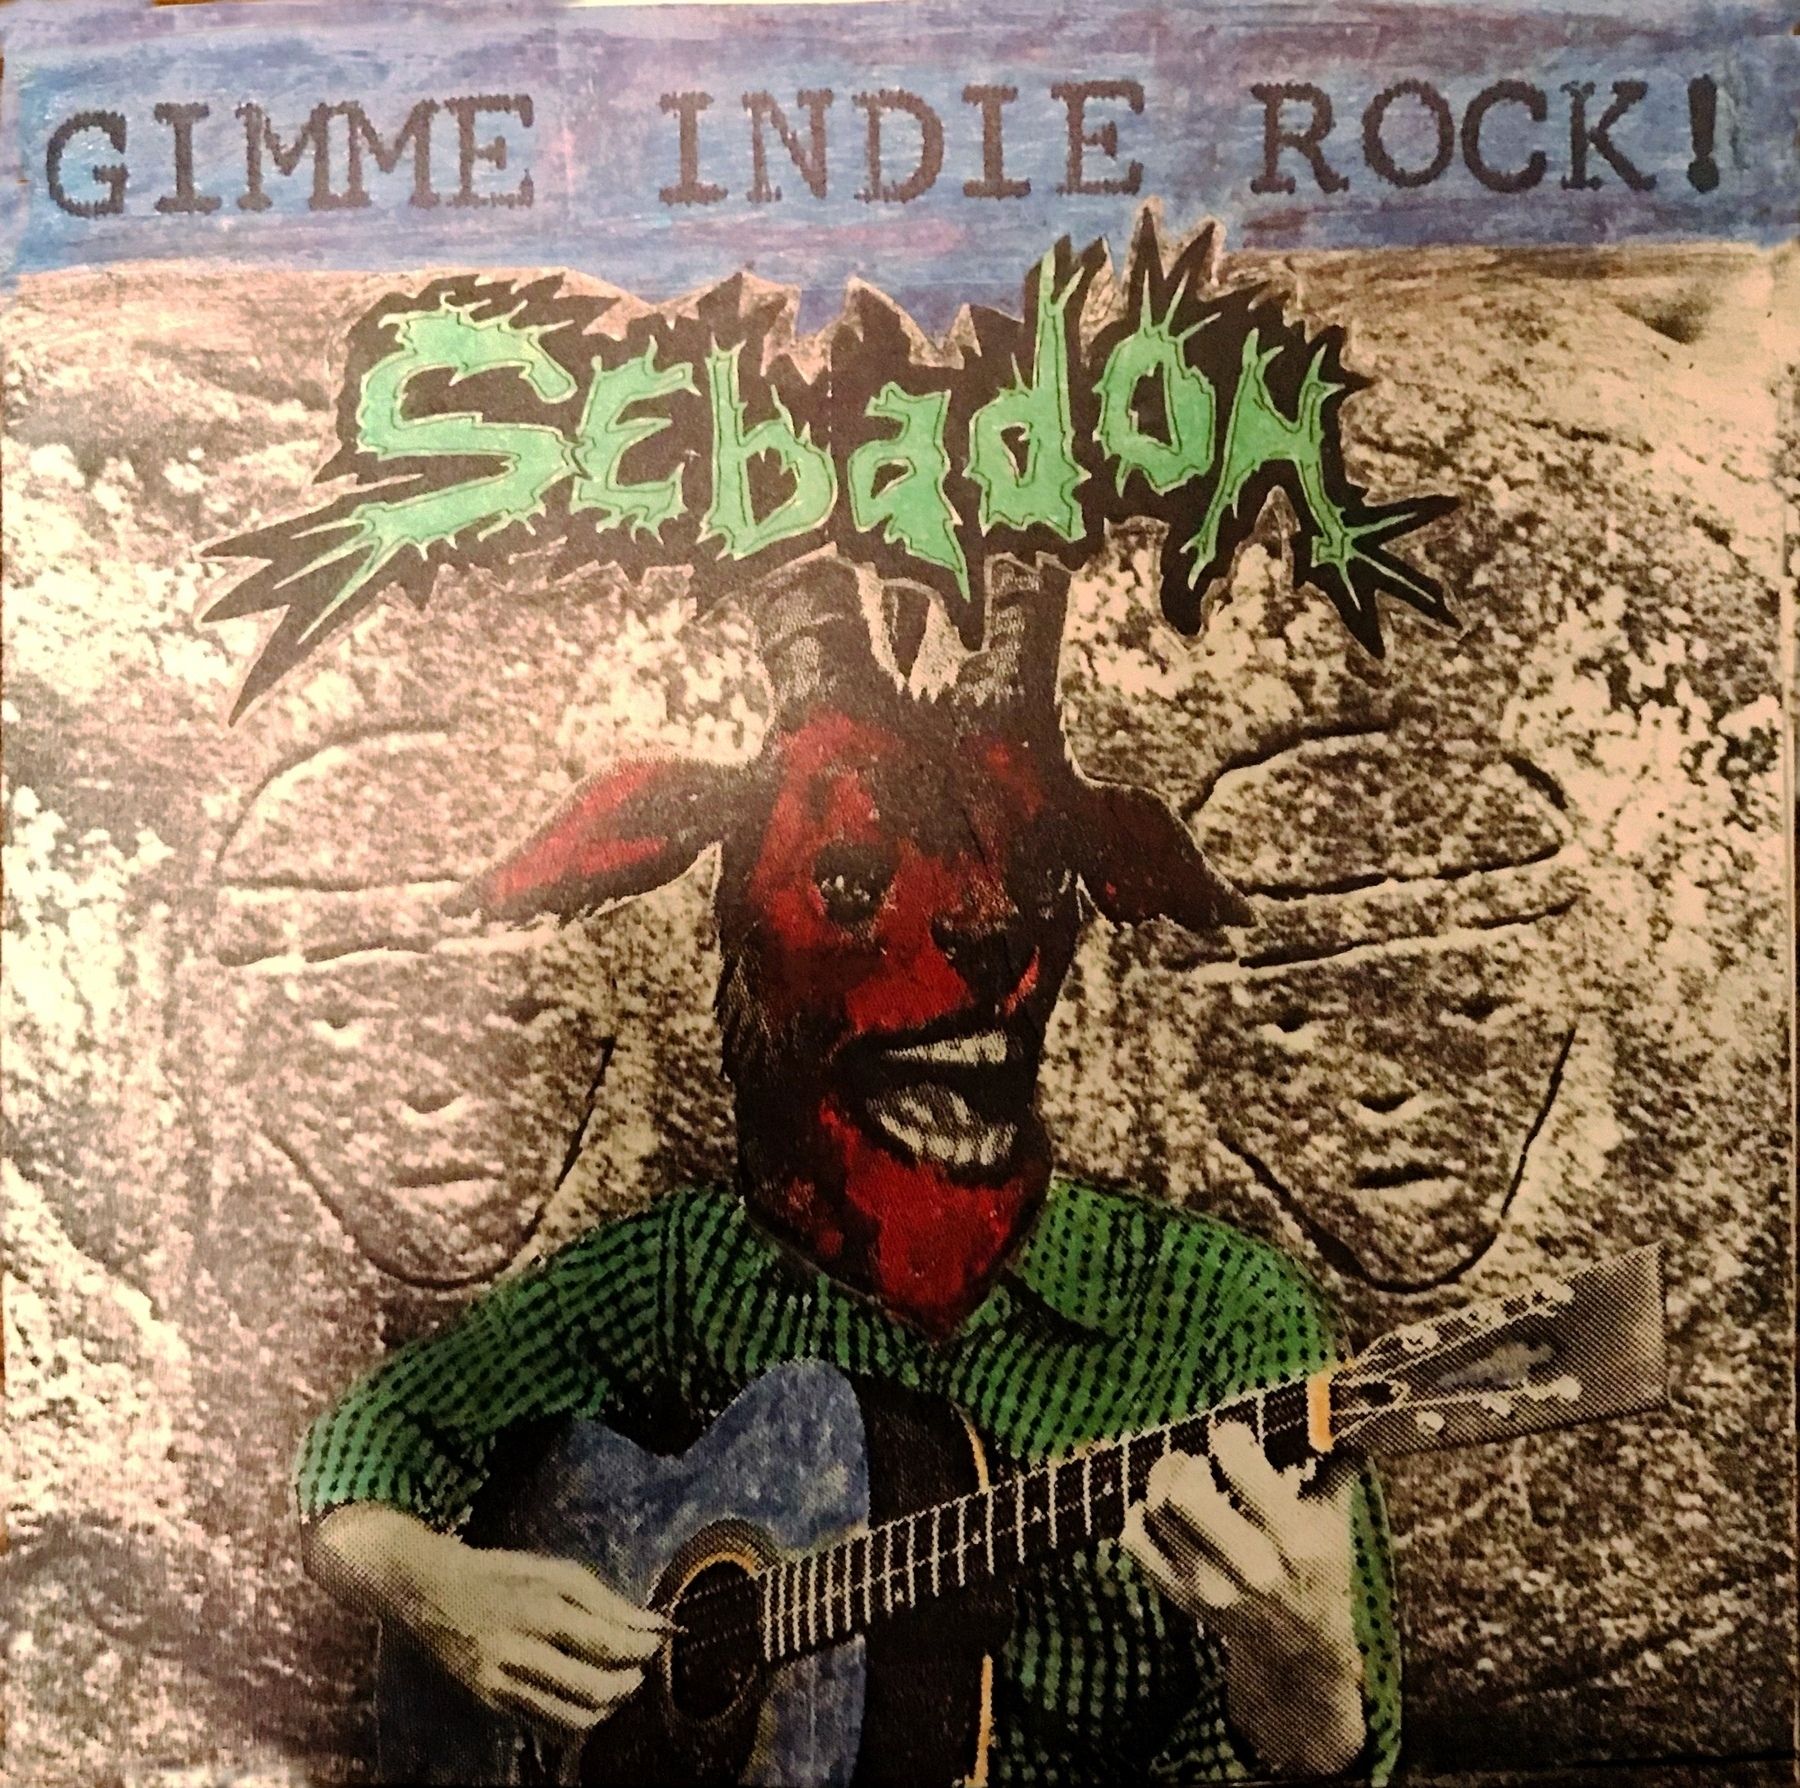 Gimmie Indie Rock